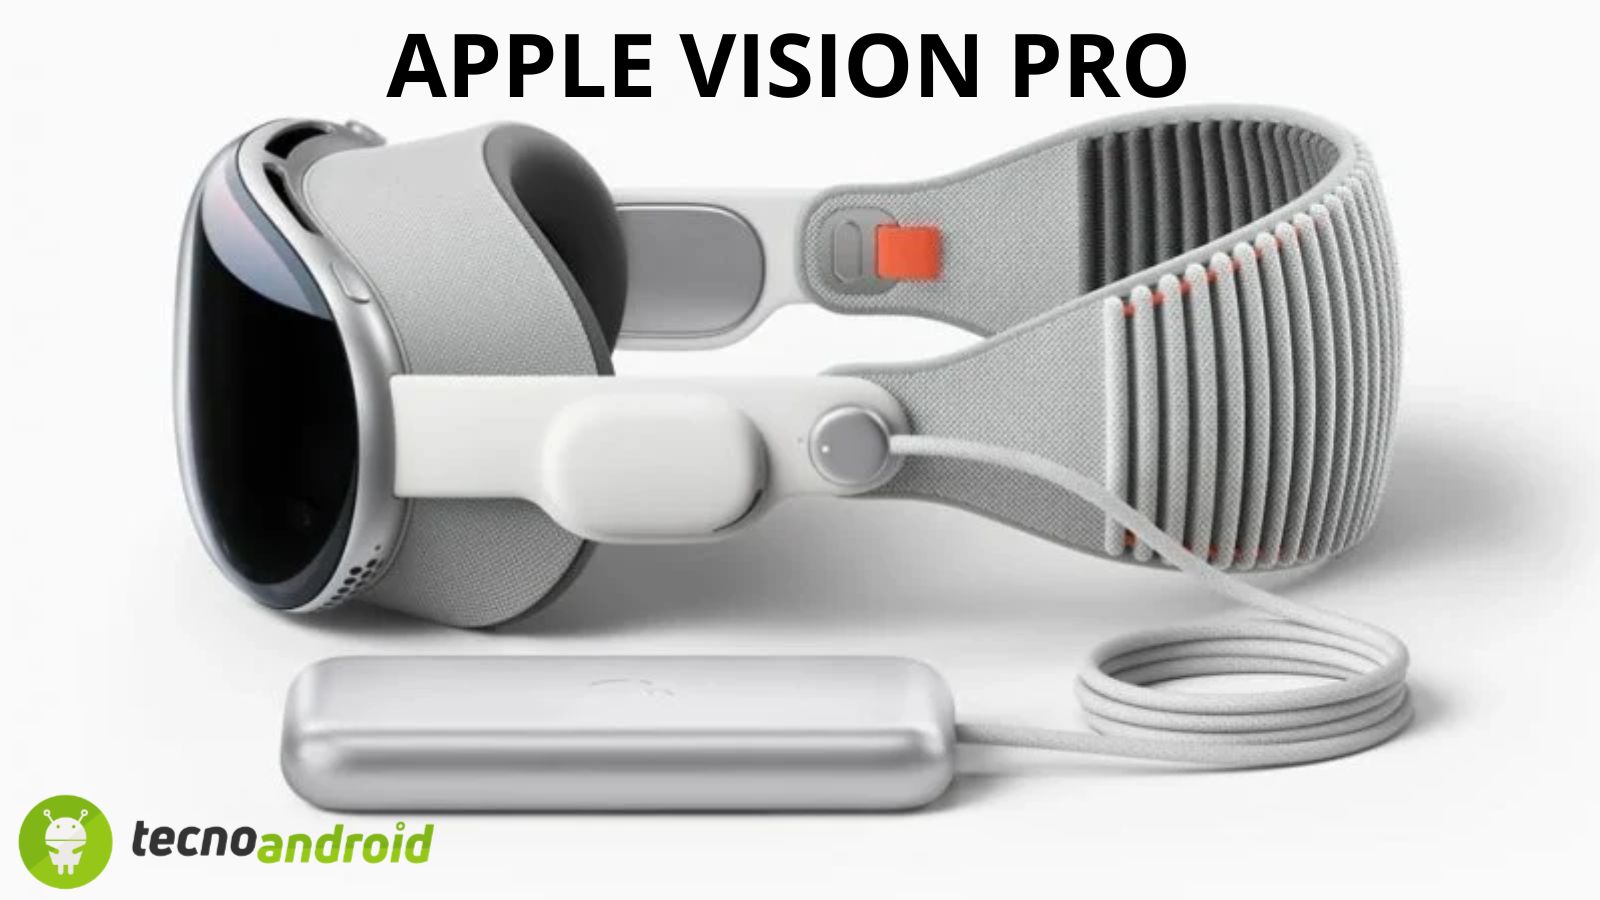 Apple Vision Pro: strepitose novità in arrivo per il visore 